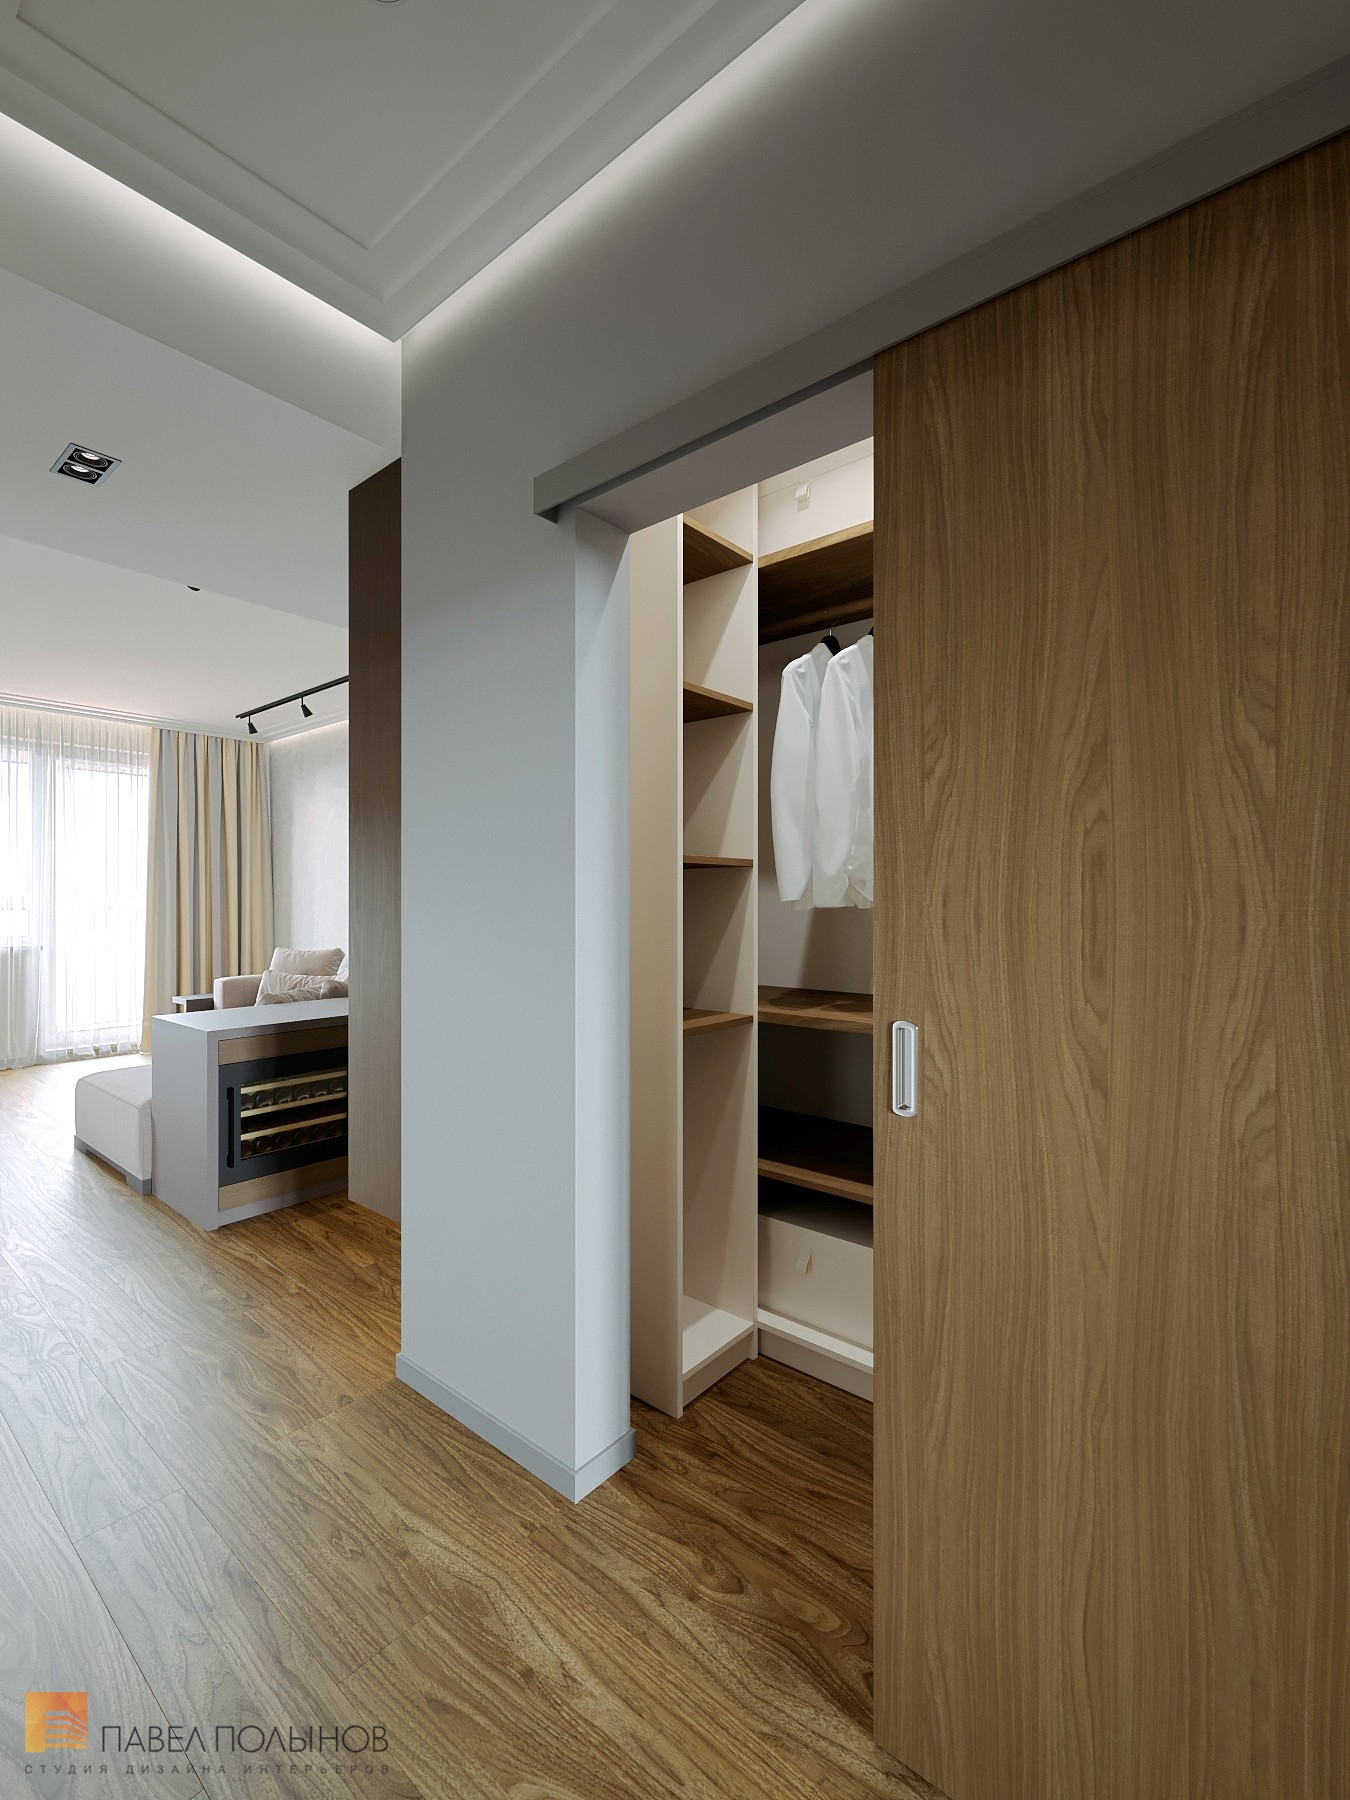 Фото дизайн гардеробной из проекта «Интерьер квартиры с современном стиле с элементами скандинавского, ЖК «Skandi Klubb», 77 кв.м.»